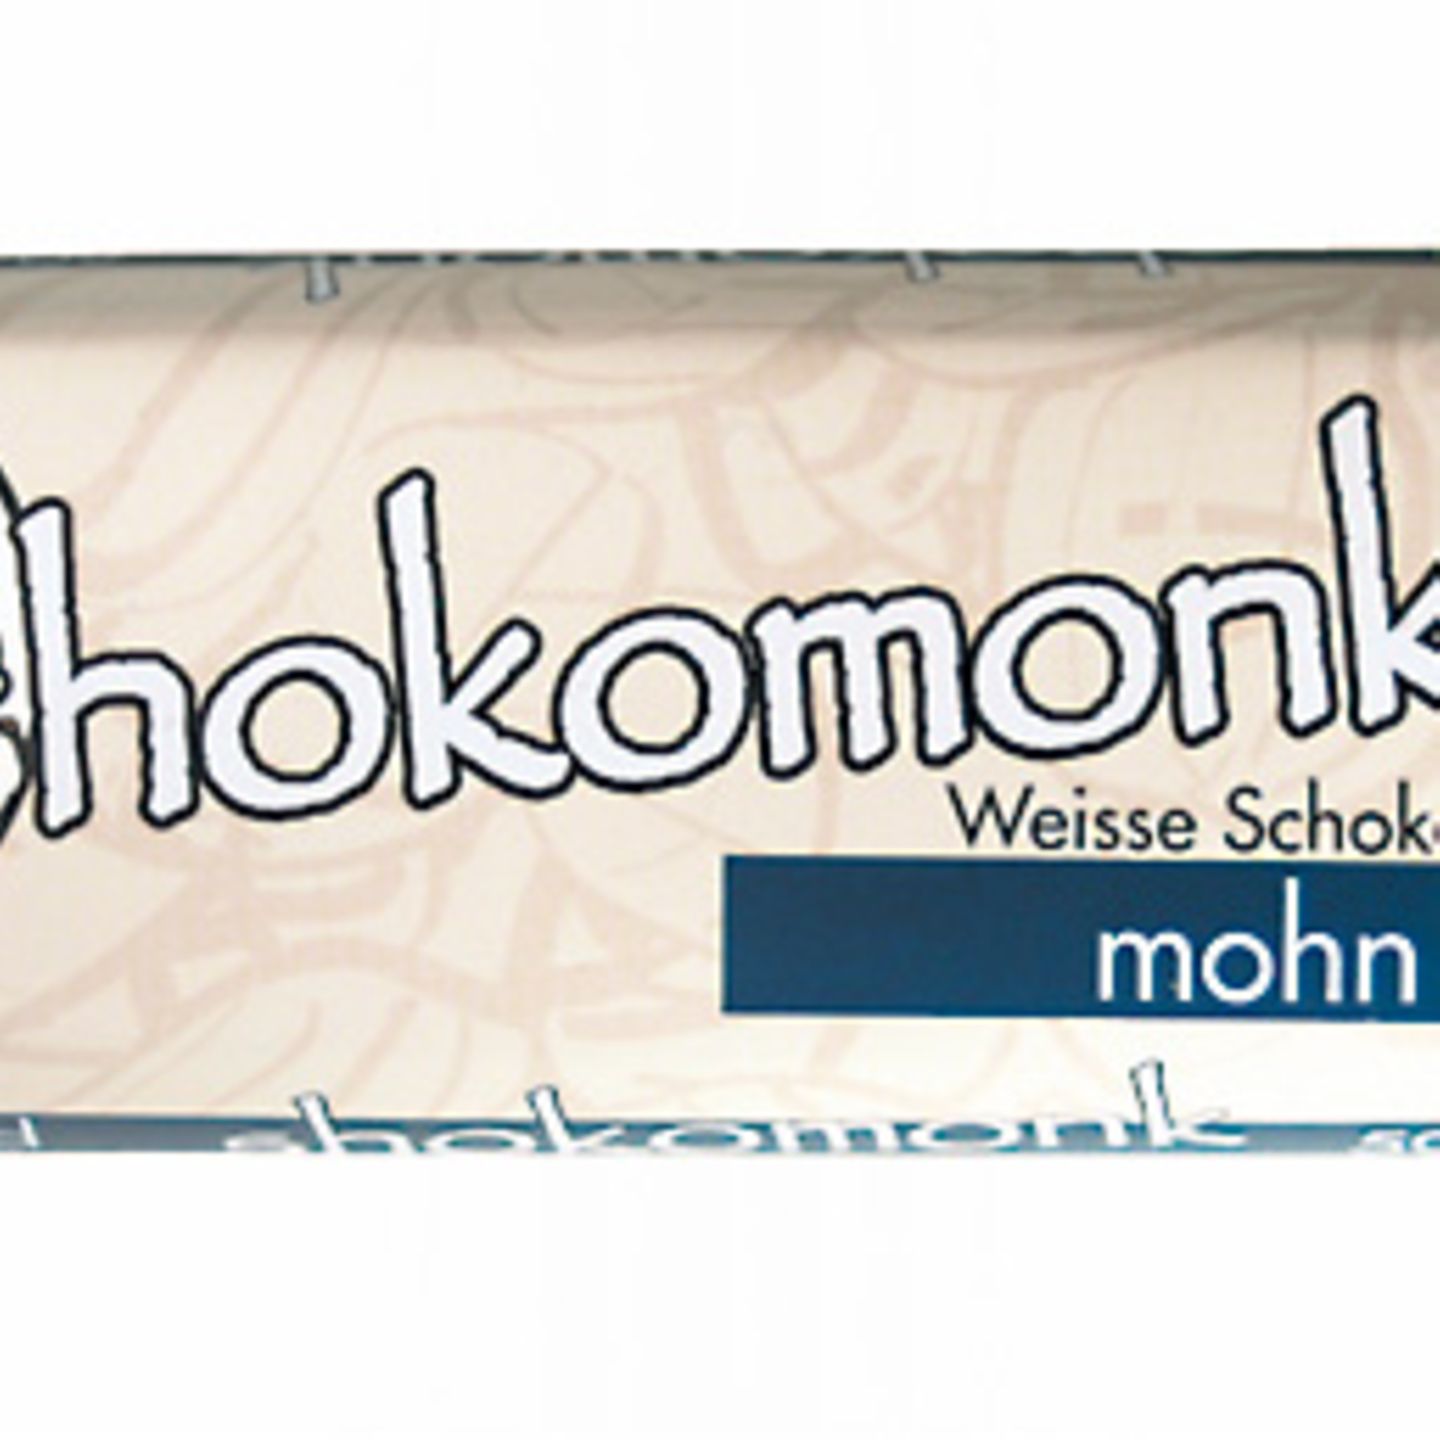 "Weiße Schokolade Mohn" von shokomonk